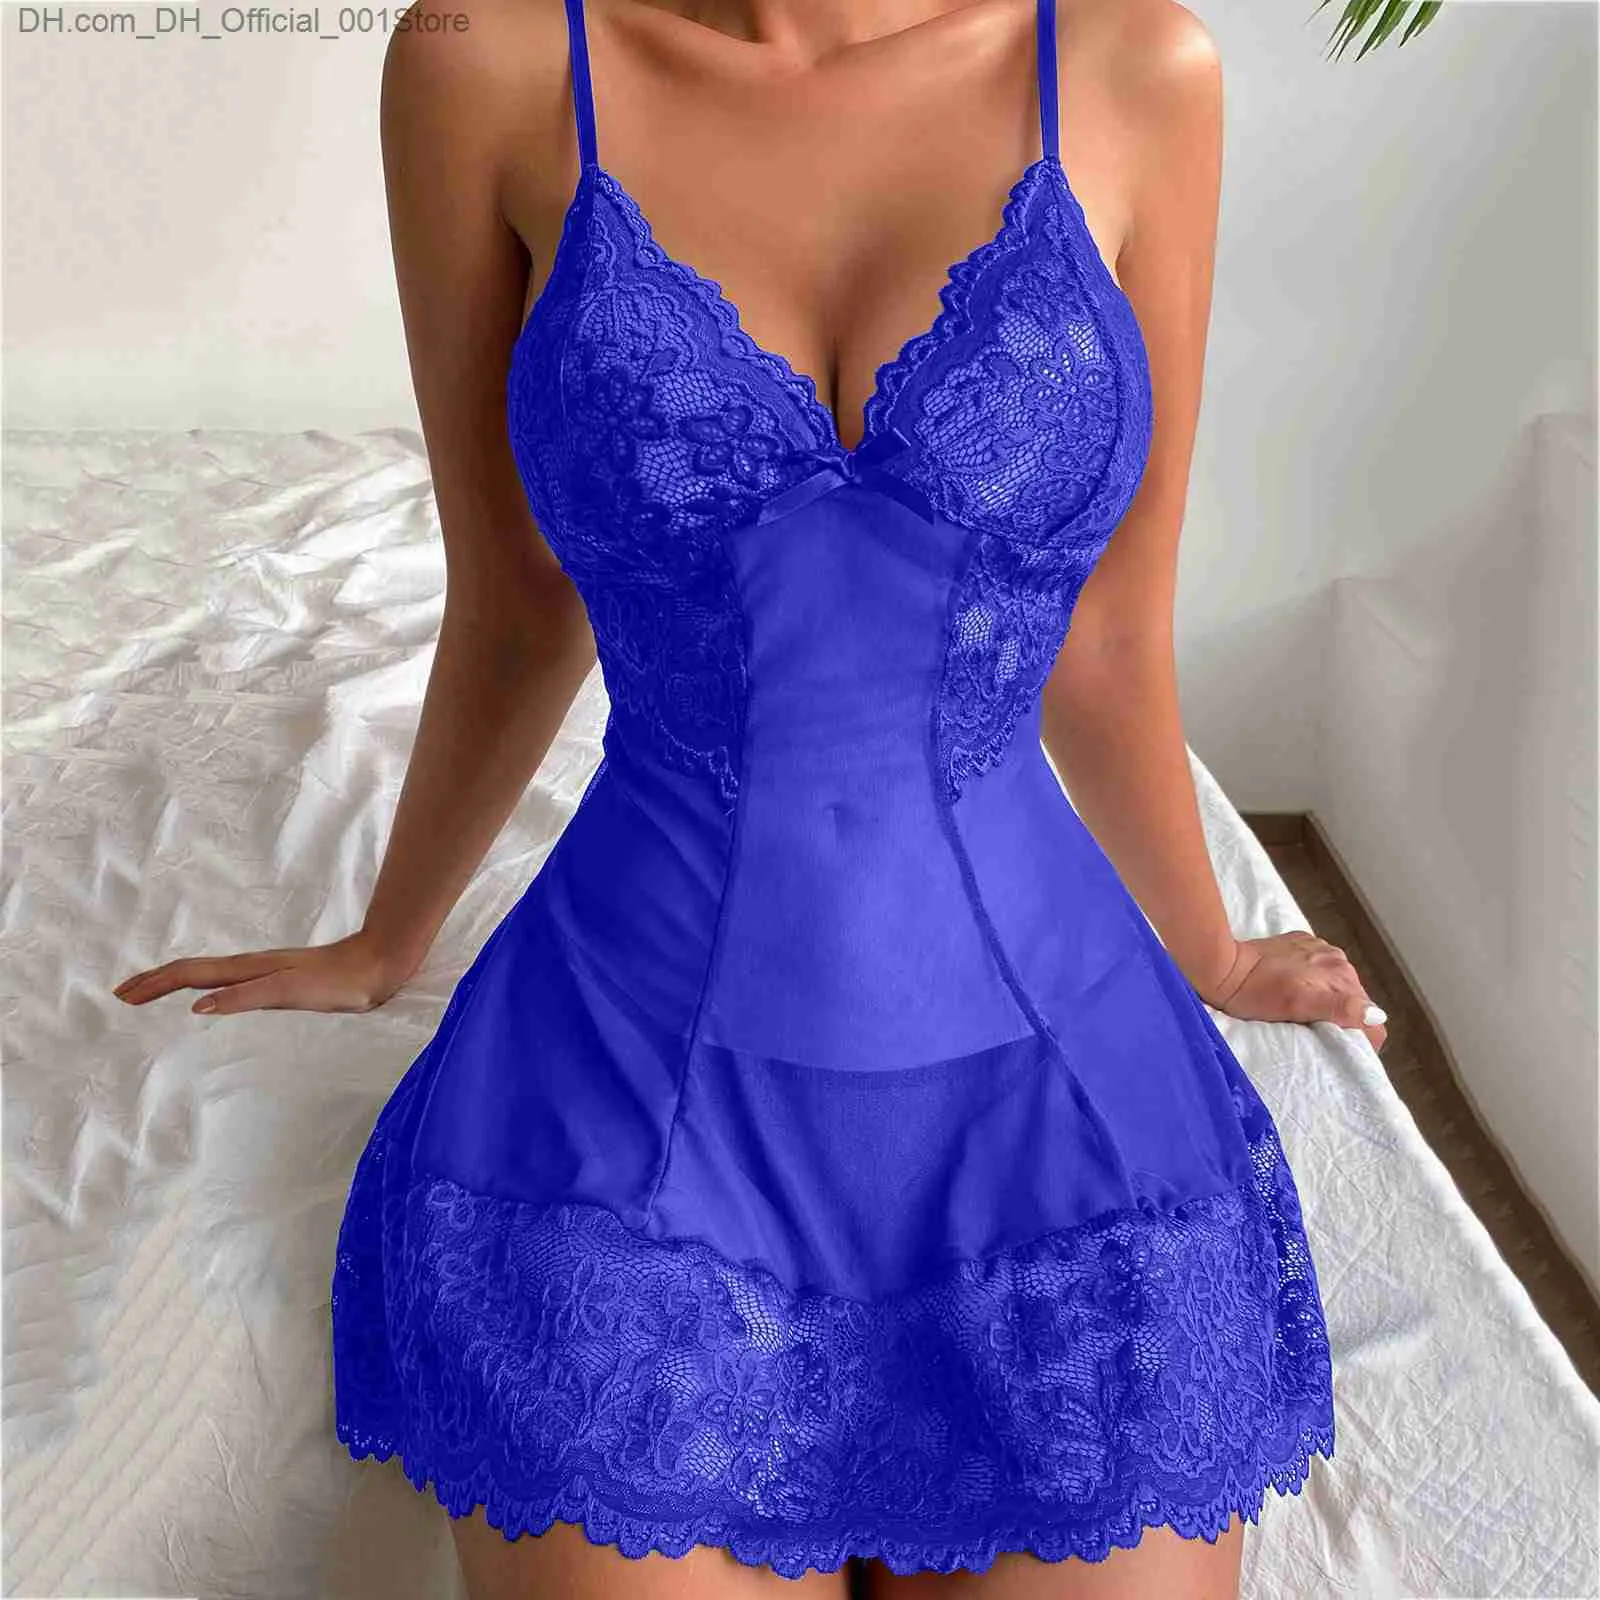 Lingerie De Roupas De Sono Feminina Gota De Linger Atraente Usa Renda Sexy  Azul Mulheres Babydoll Preto Vestido De Vestido De Vestuário De $66,19